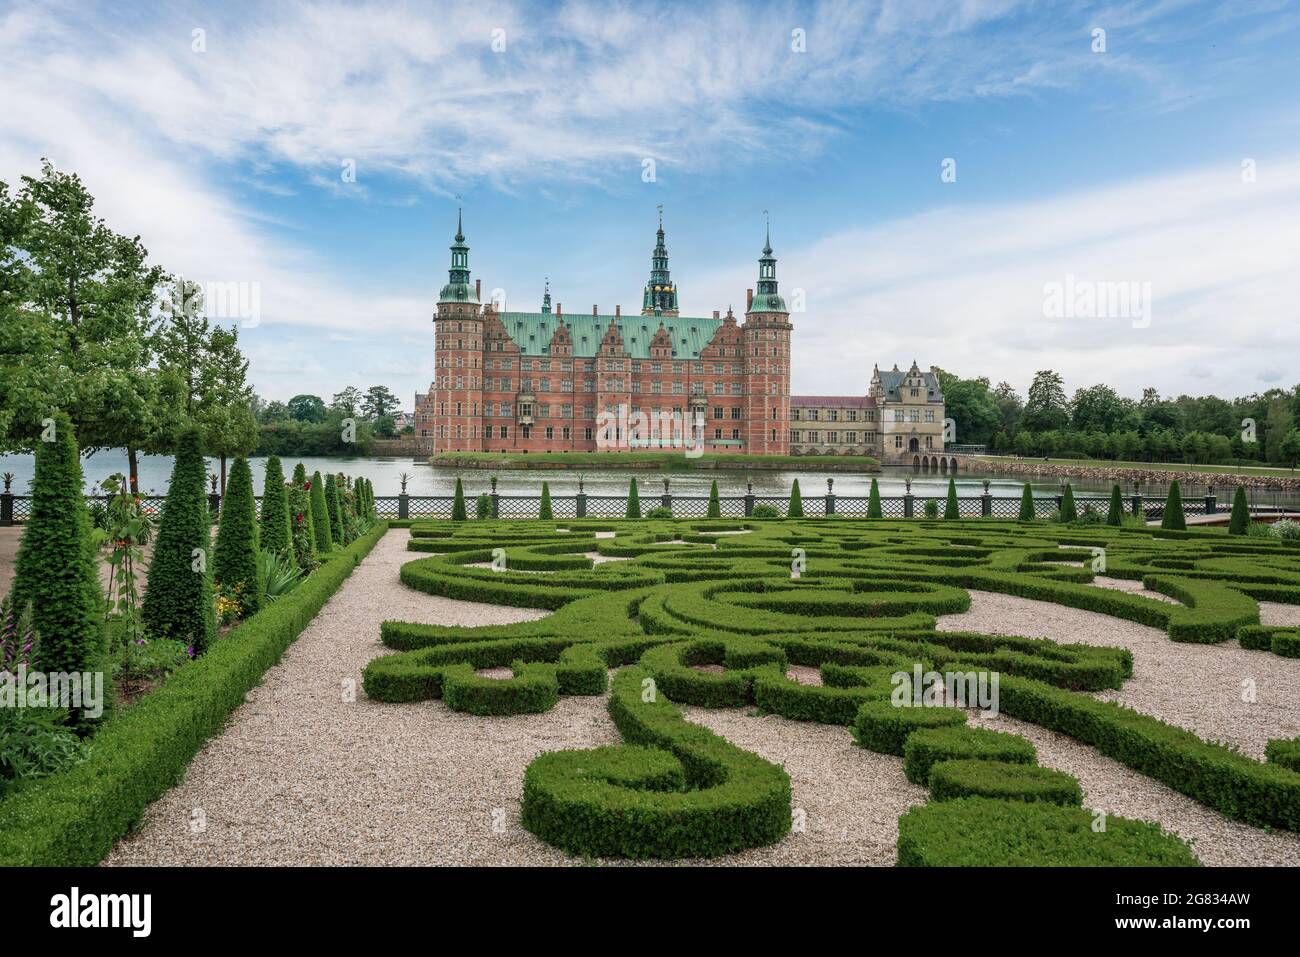 Parco barocco e giardini del castello di Frederiksborg - Hillerod, Danimarca Foto Stock